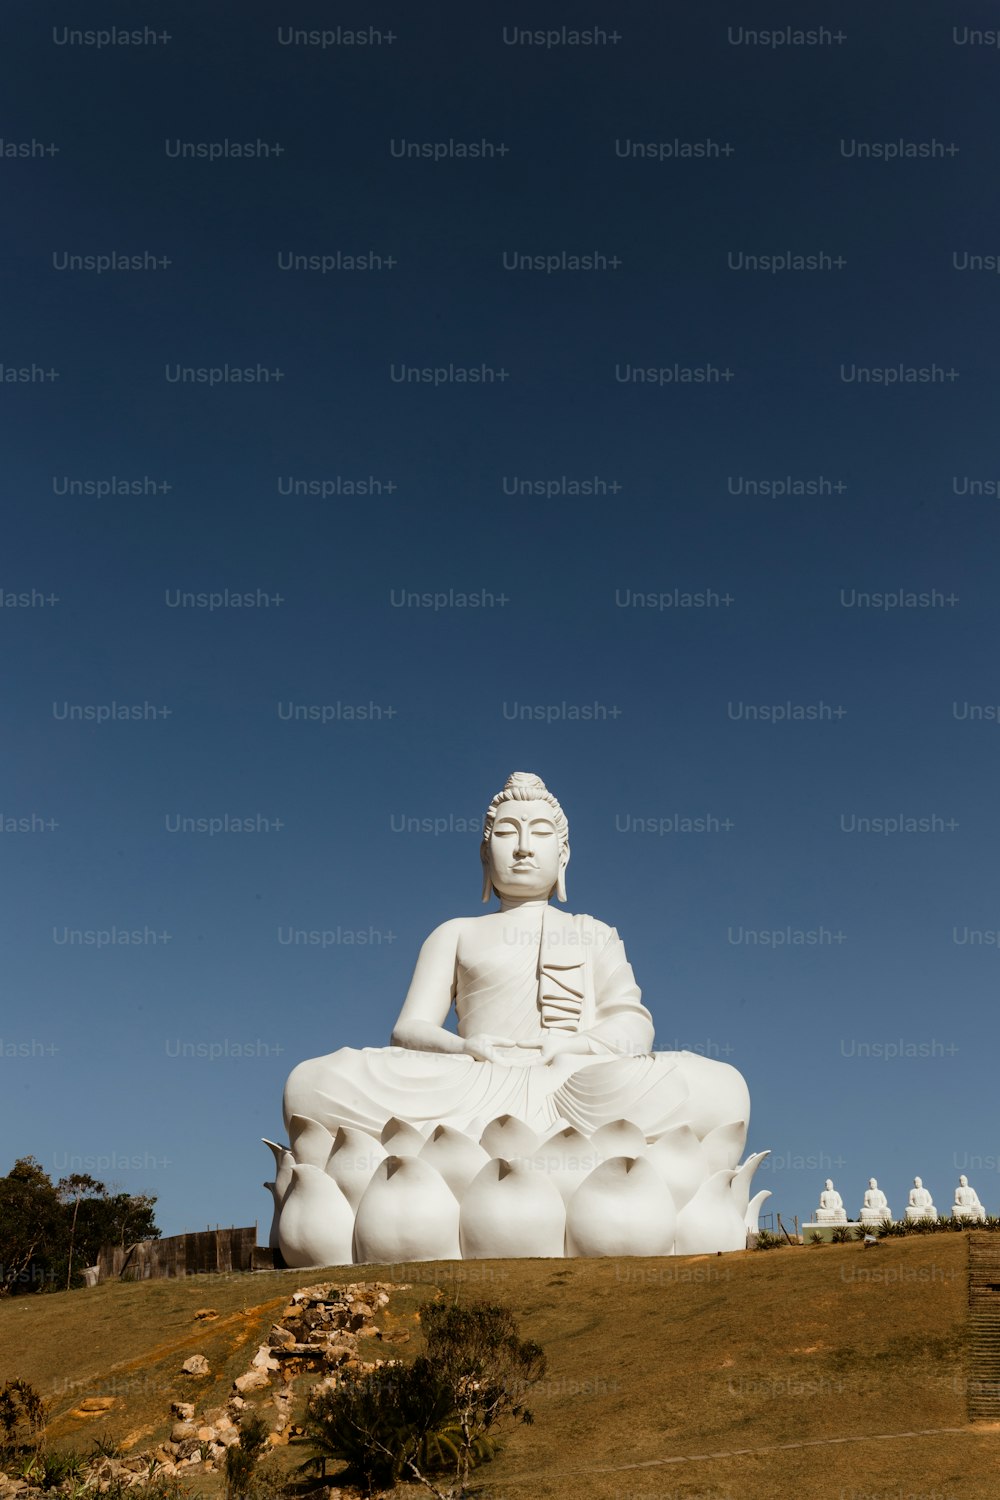 Eine große weiße Buddha-Statue auf einem Hügel